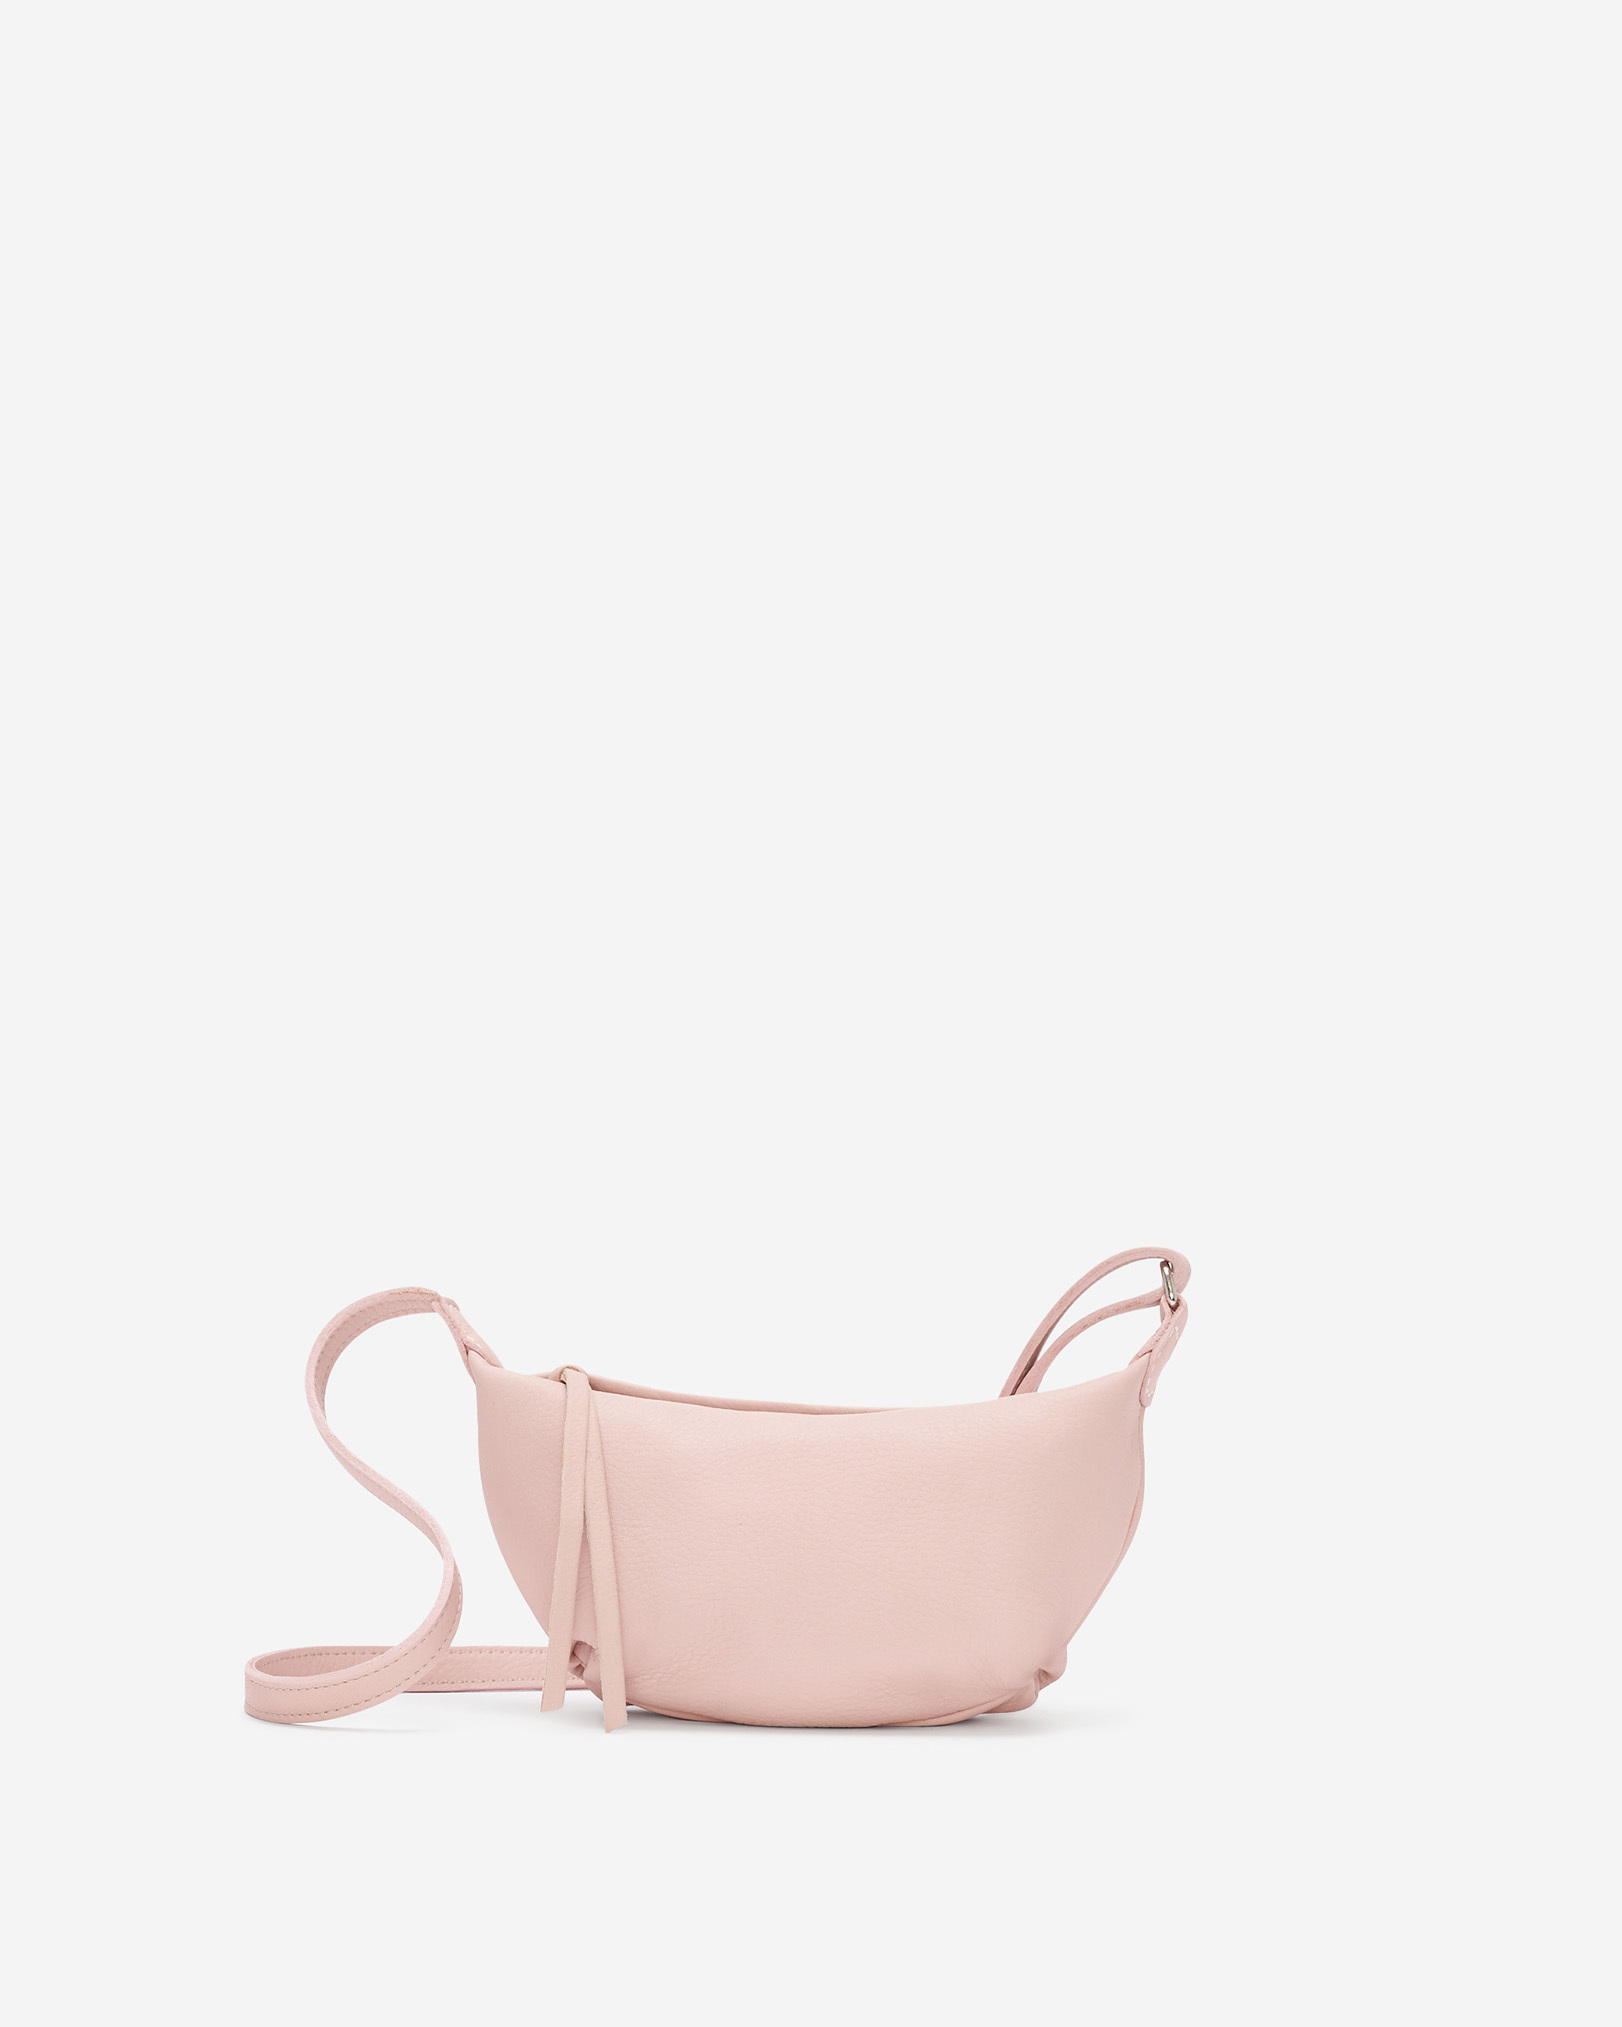 Roots Crescent Handbag Cloud in Pink Pearl